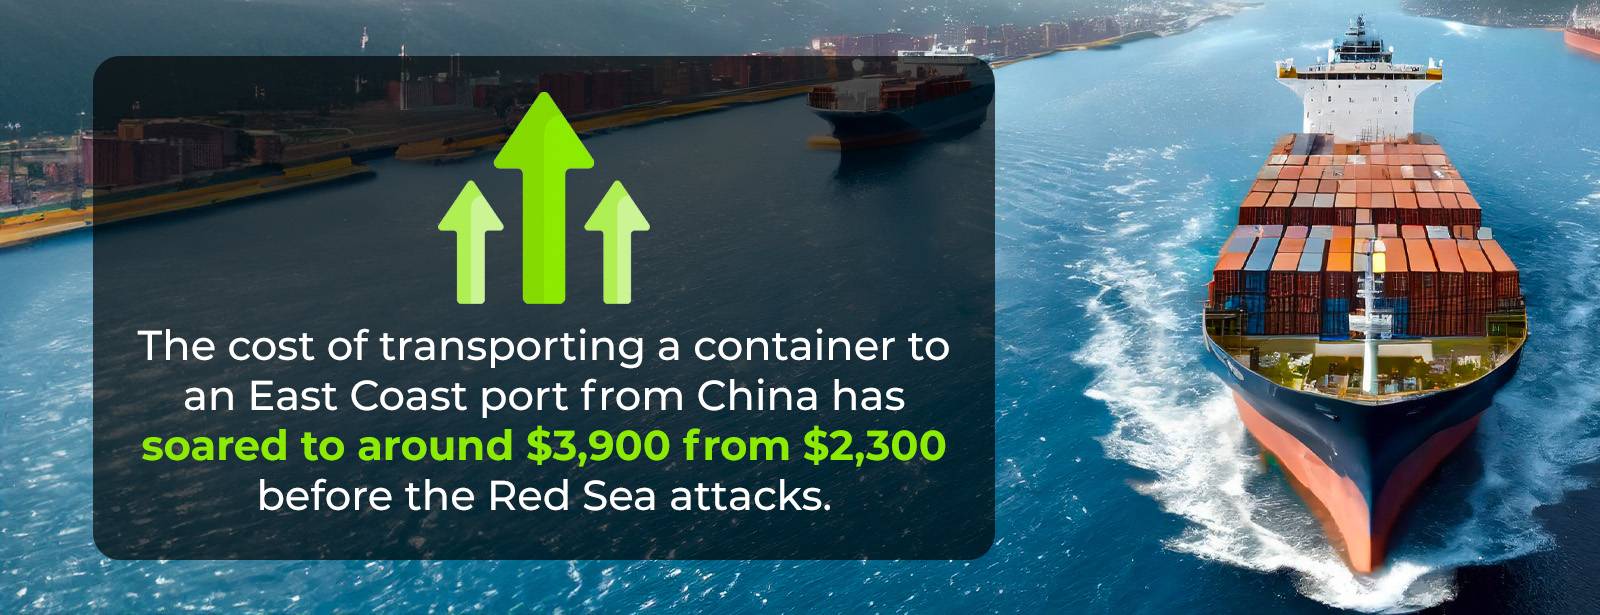 Die Kosten für den Transport eines Containers über das Rote Meer steigen um das Zweifache.